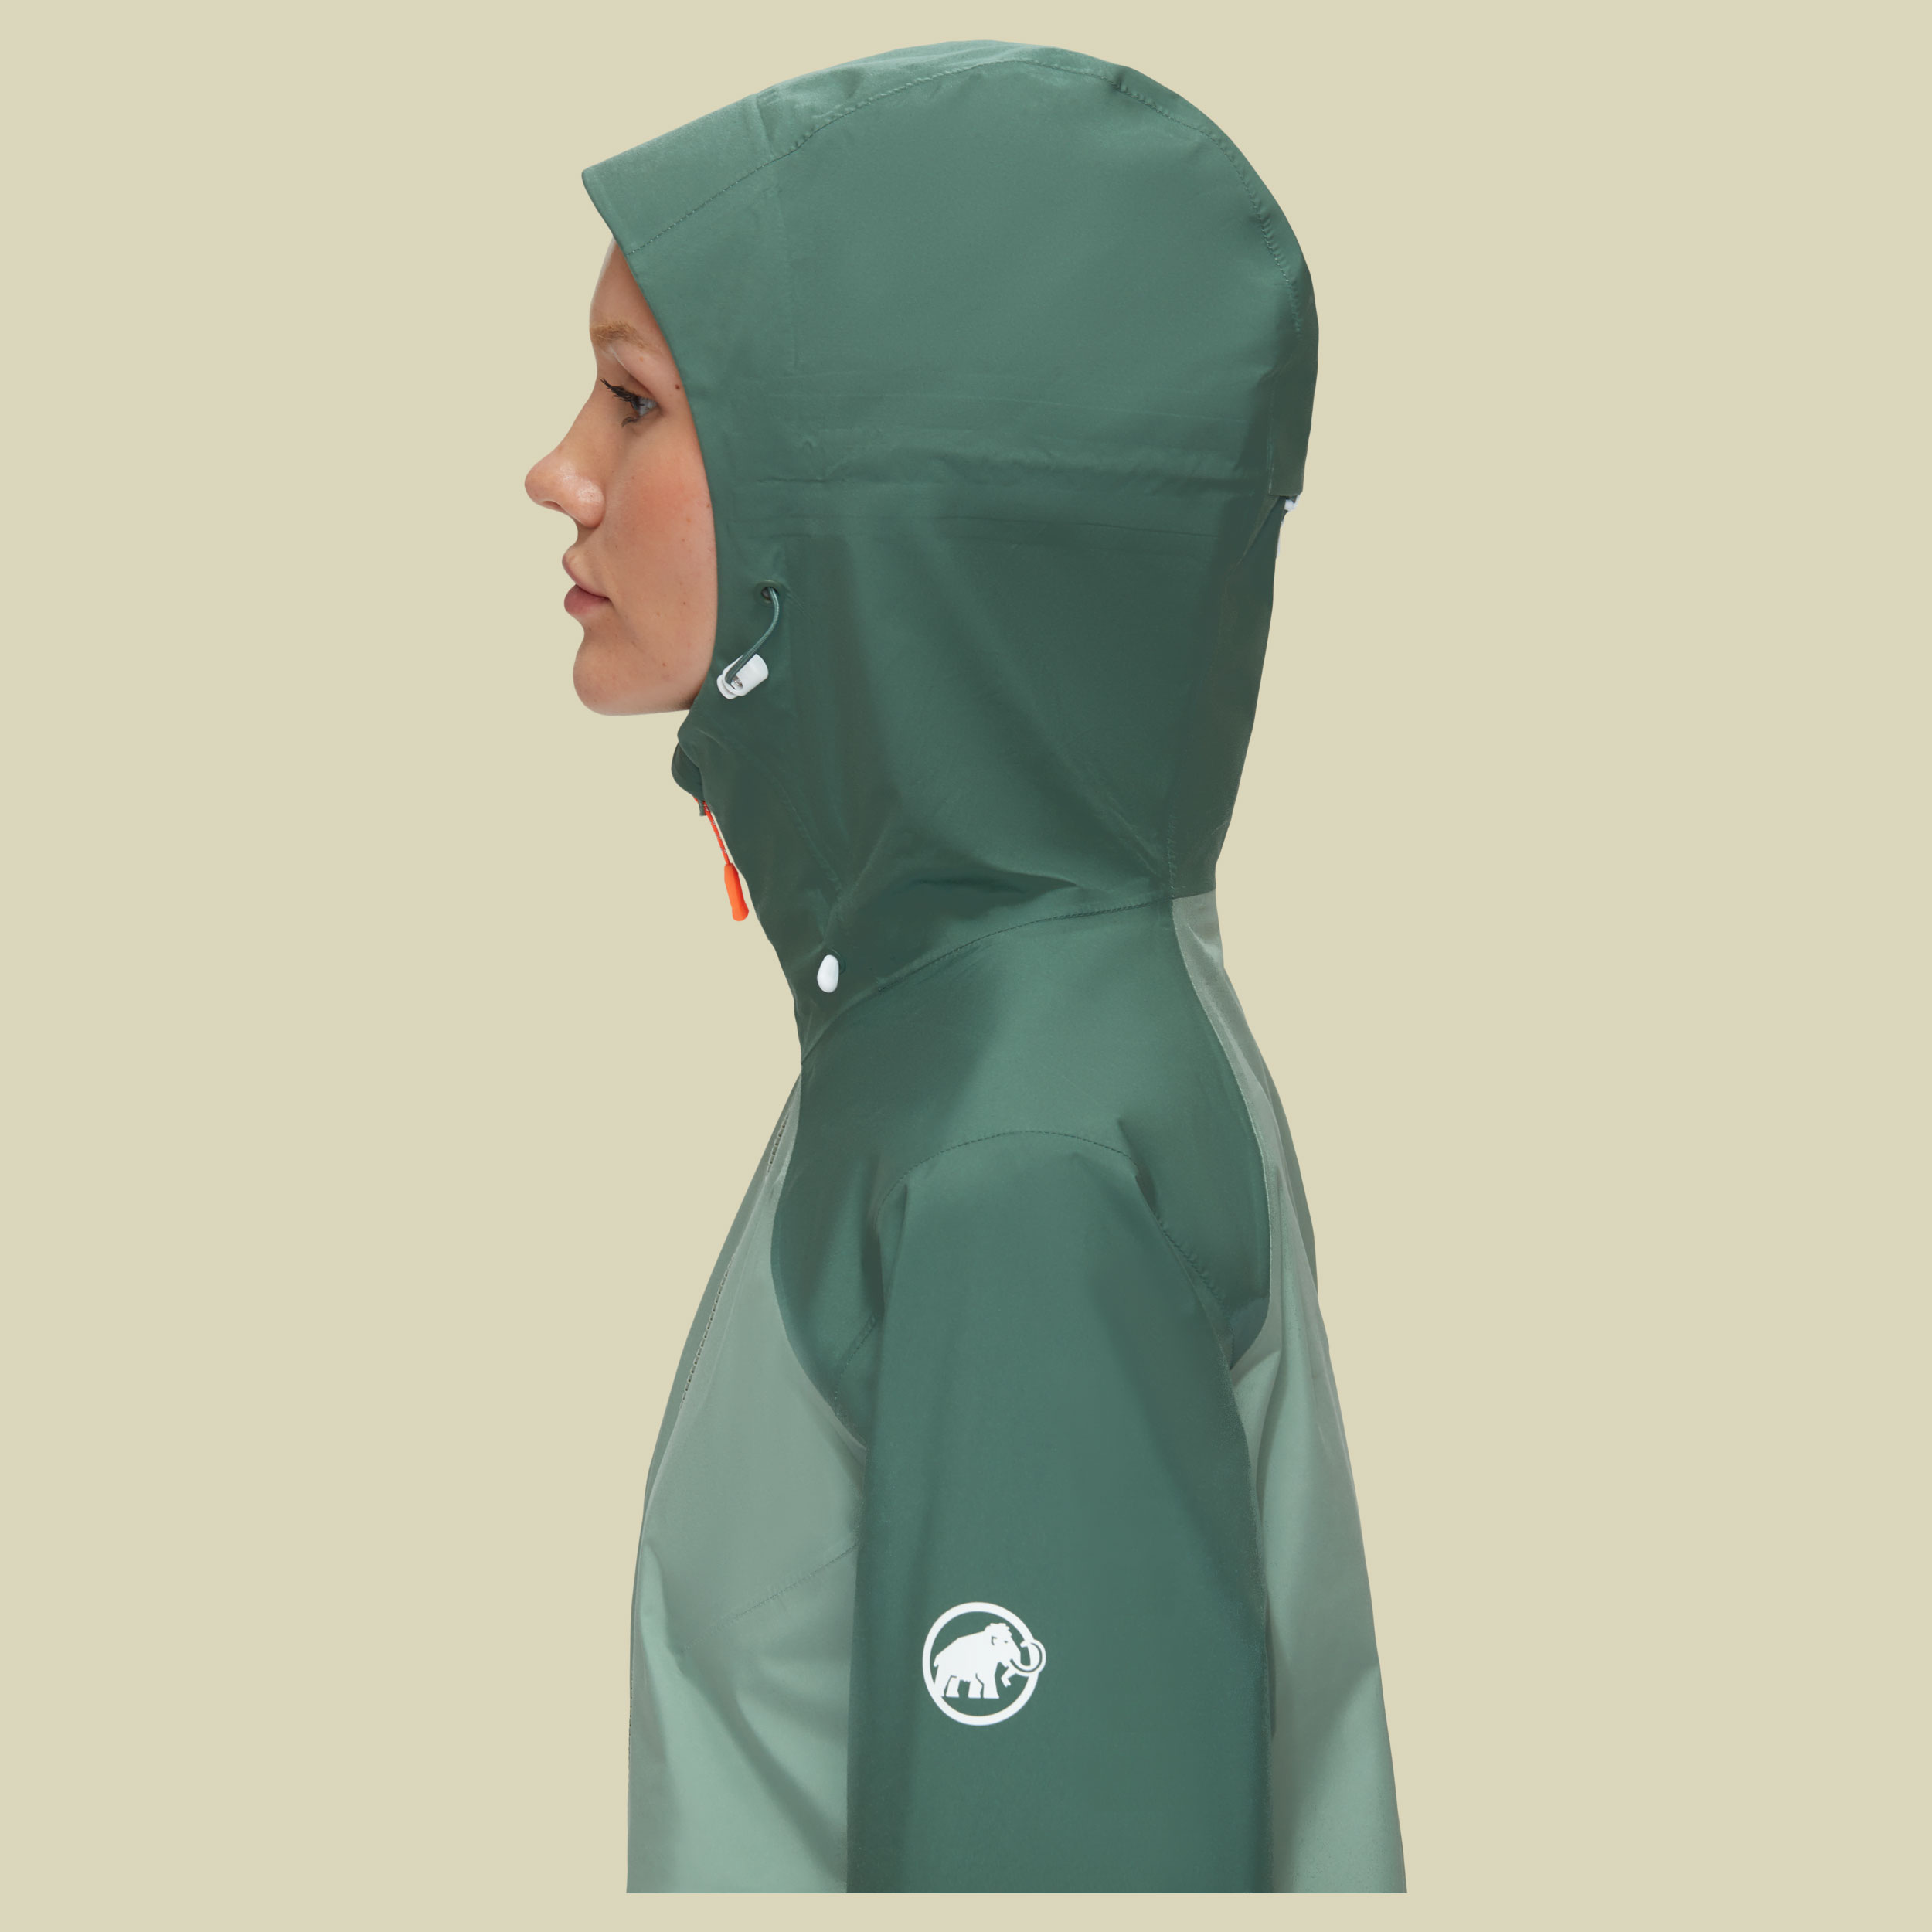 Convey Tour HS Hooded Jacket Women Größe S Farbe jade-dark jade